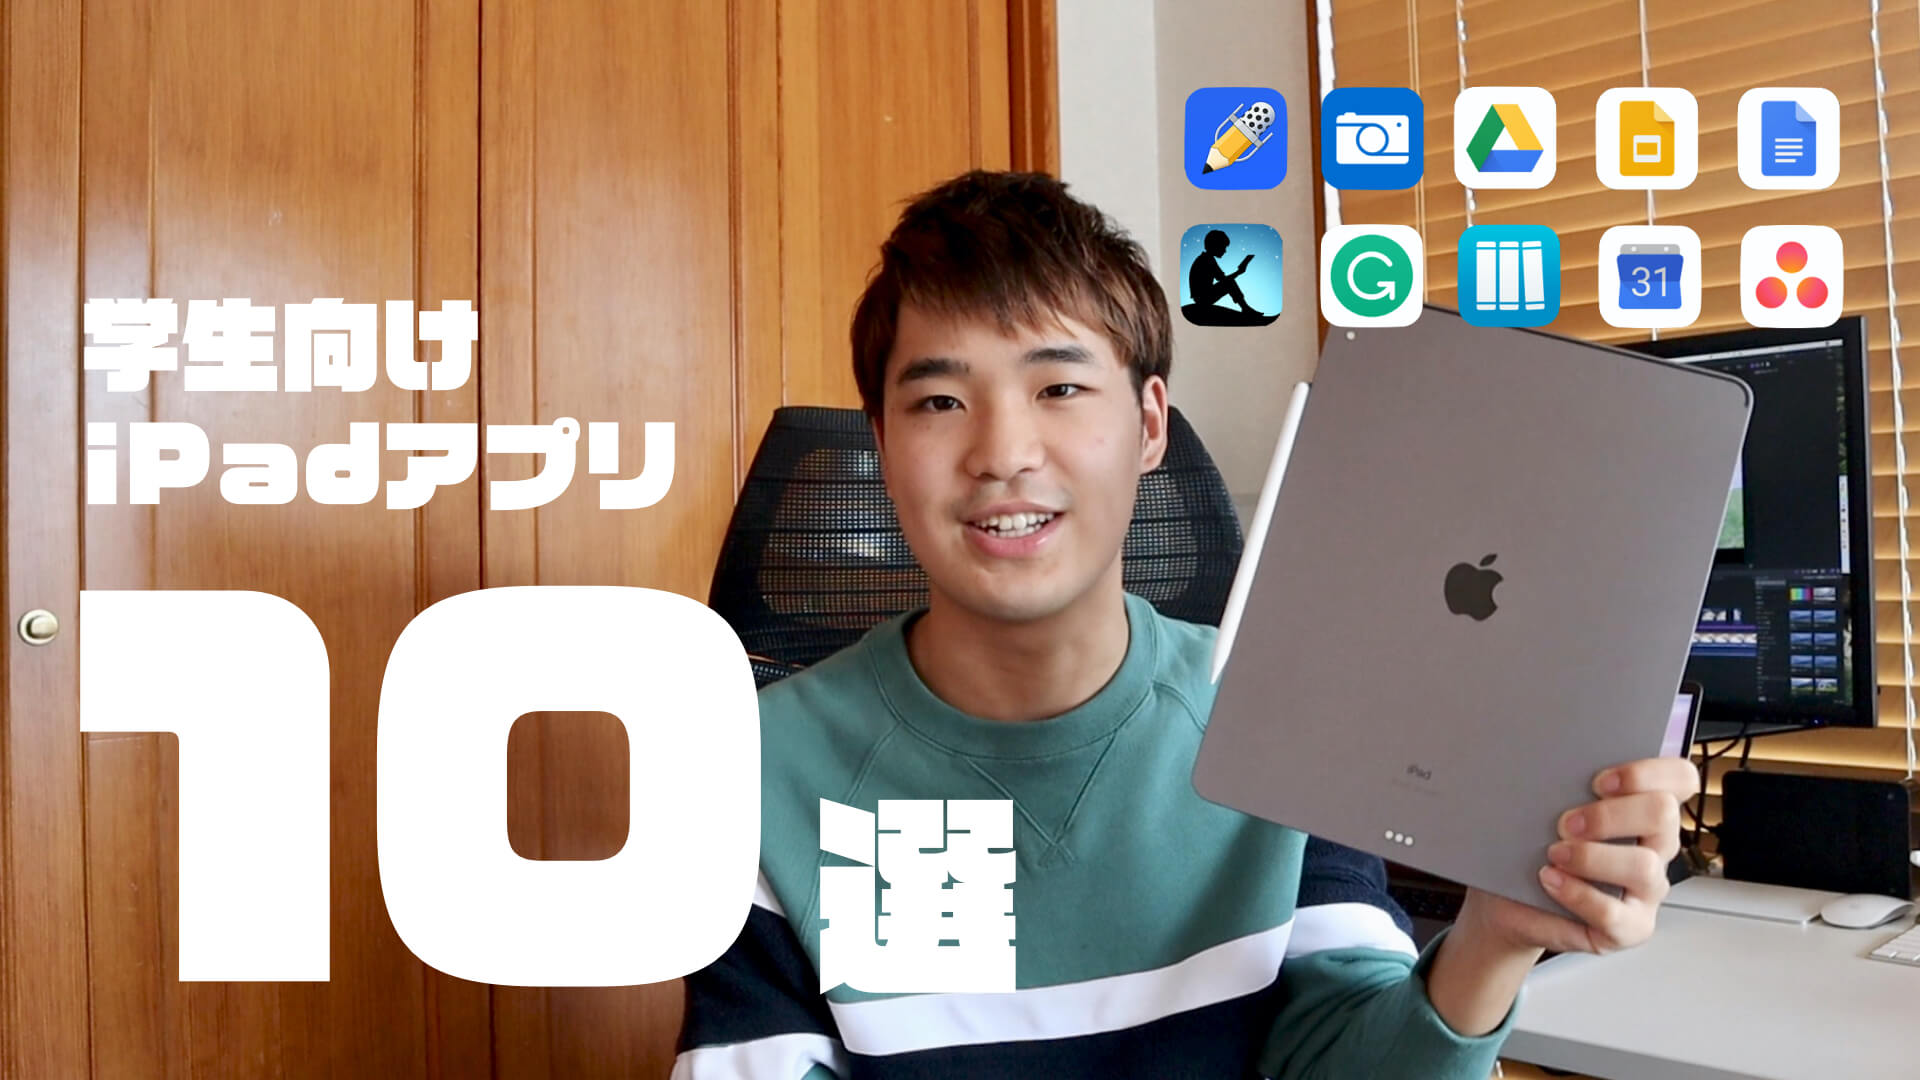 学生におすすめのiPadアプリ10選ぶを現役大学生が解説【2019年版】